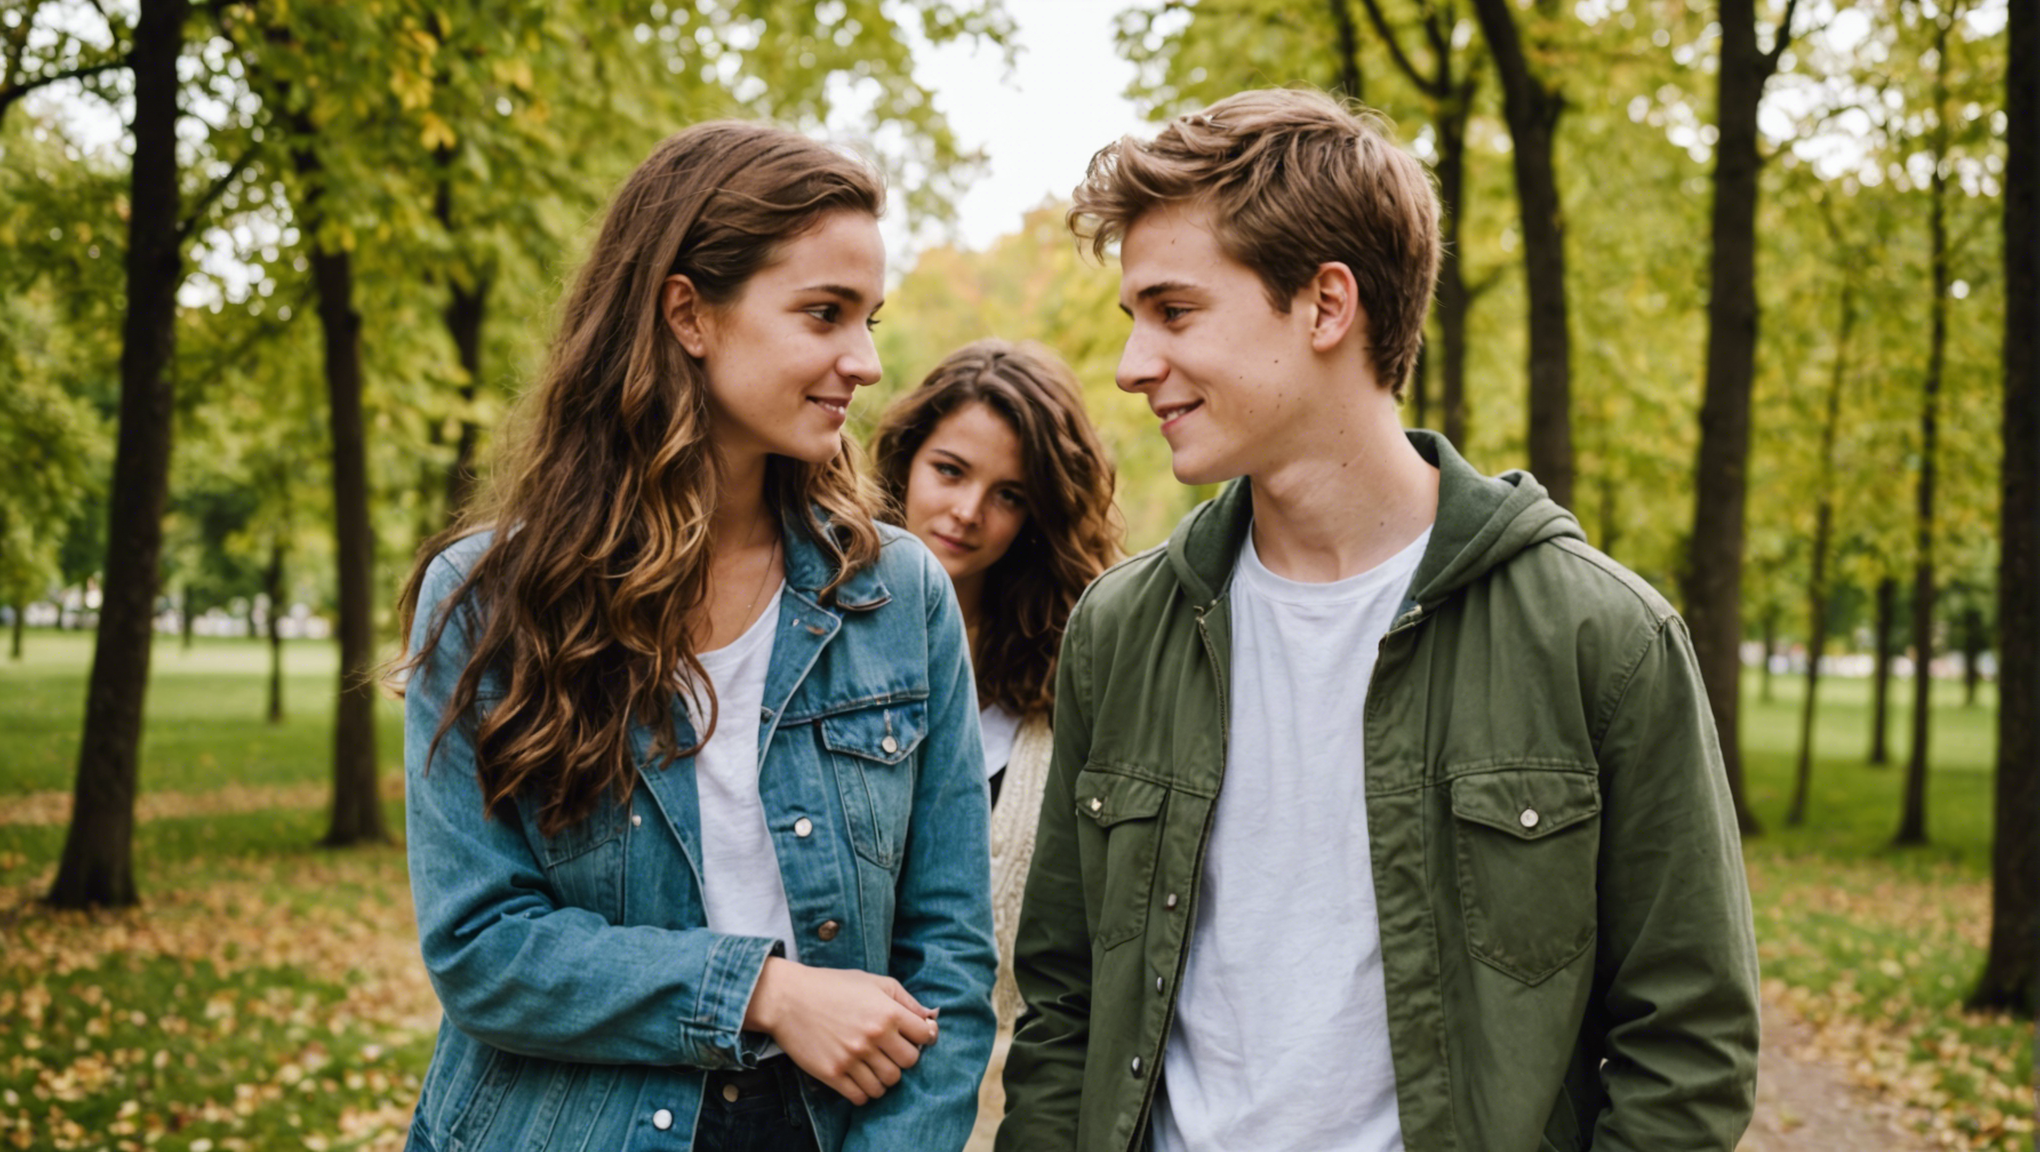 découvrez des conseils pour gérer les problèmes de couple chez les adolescents et favoriser des relations saines et épanouissantes.